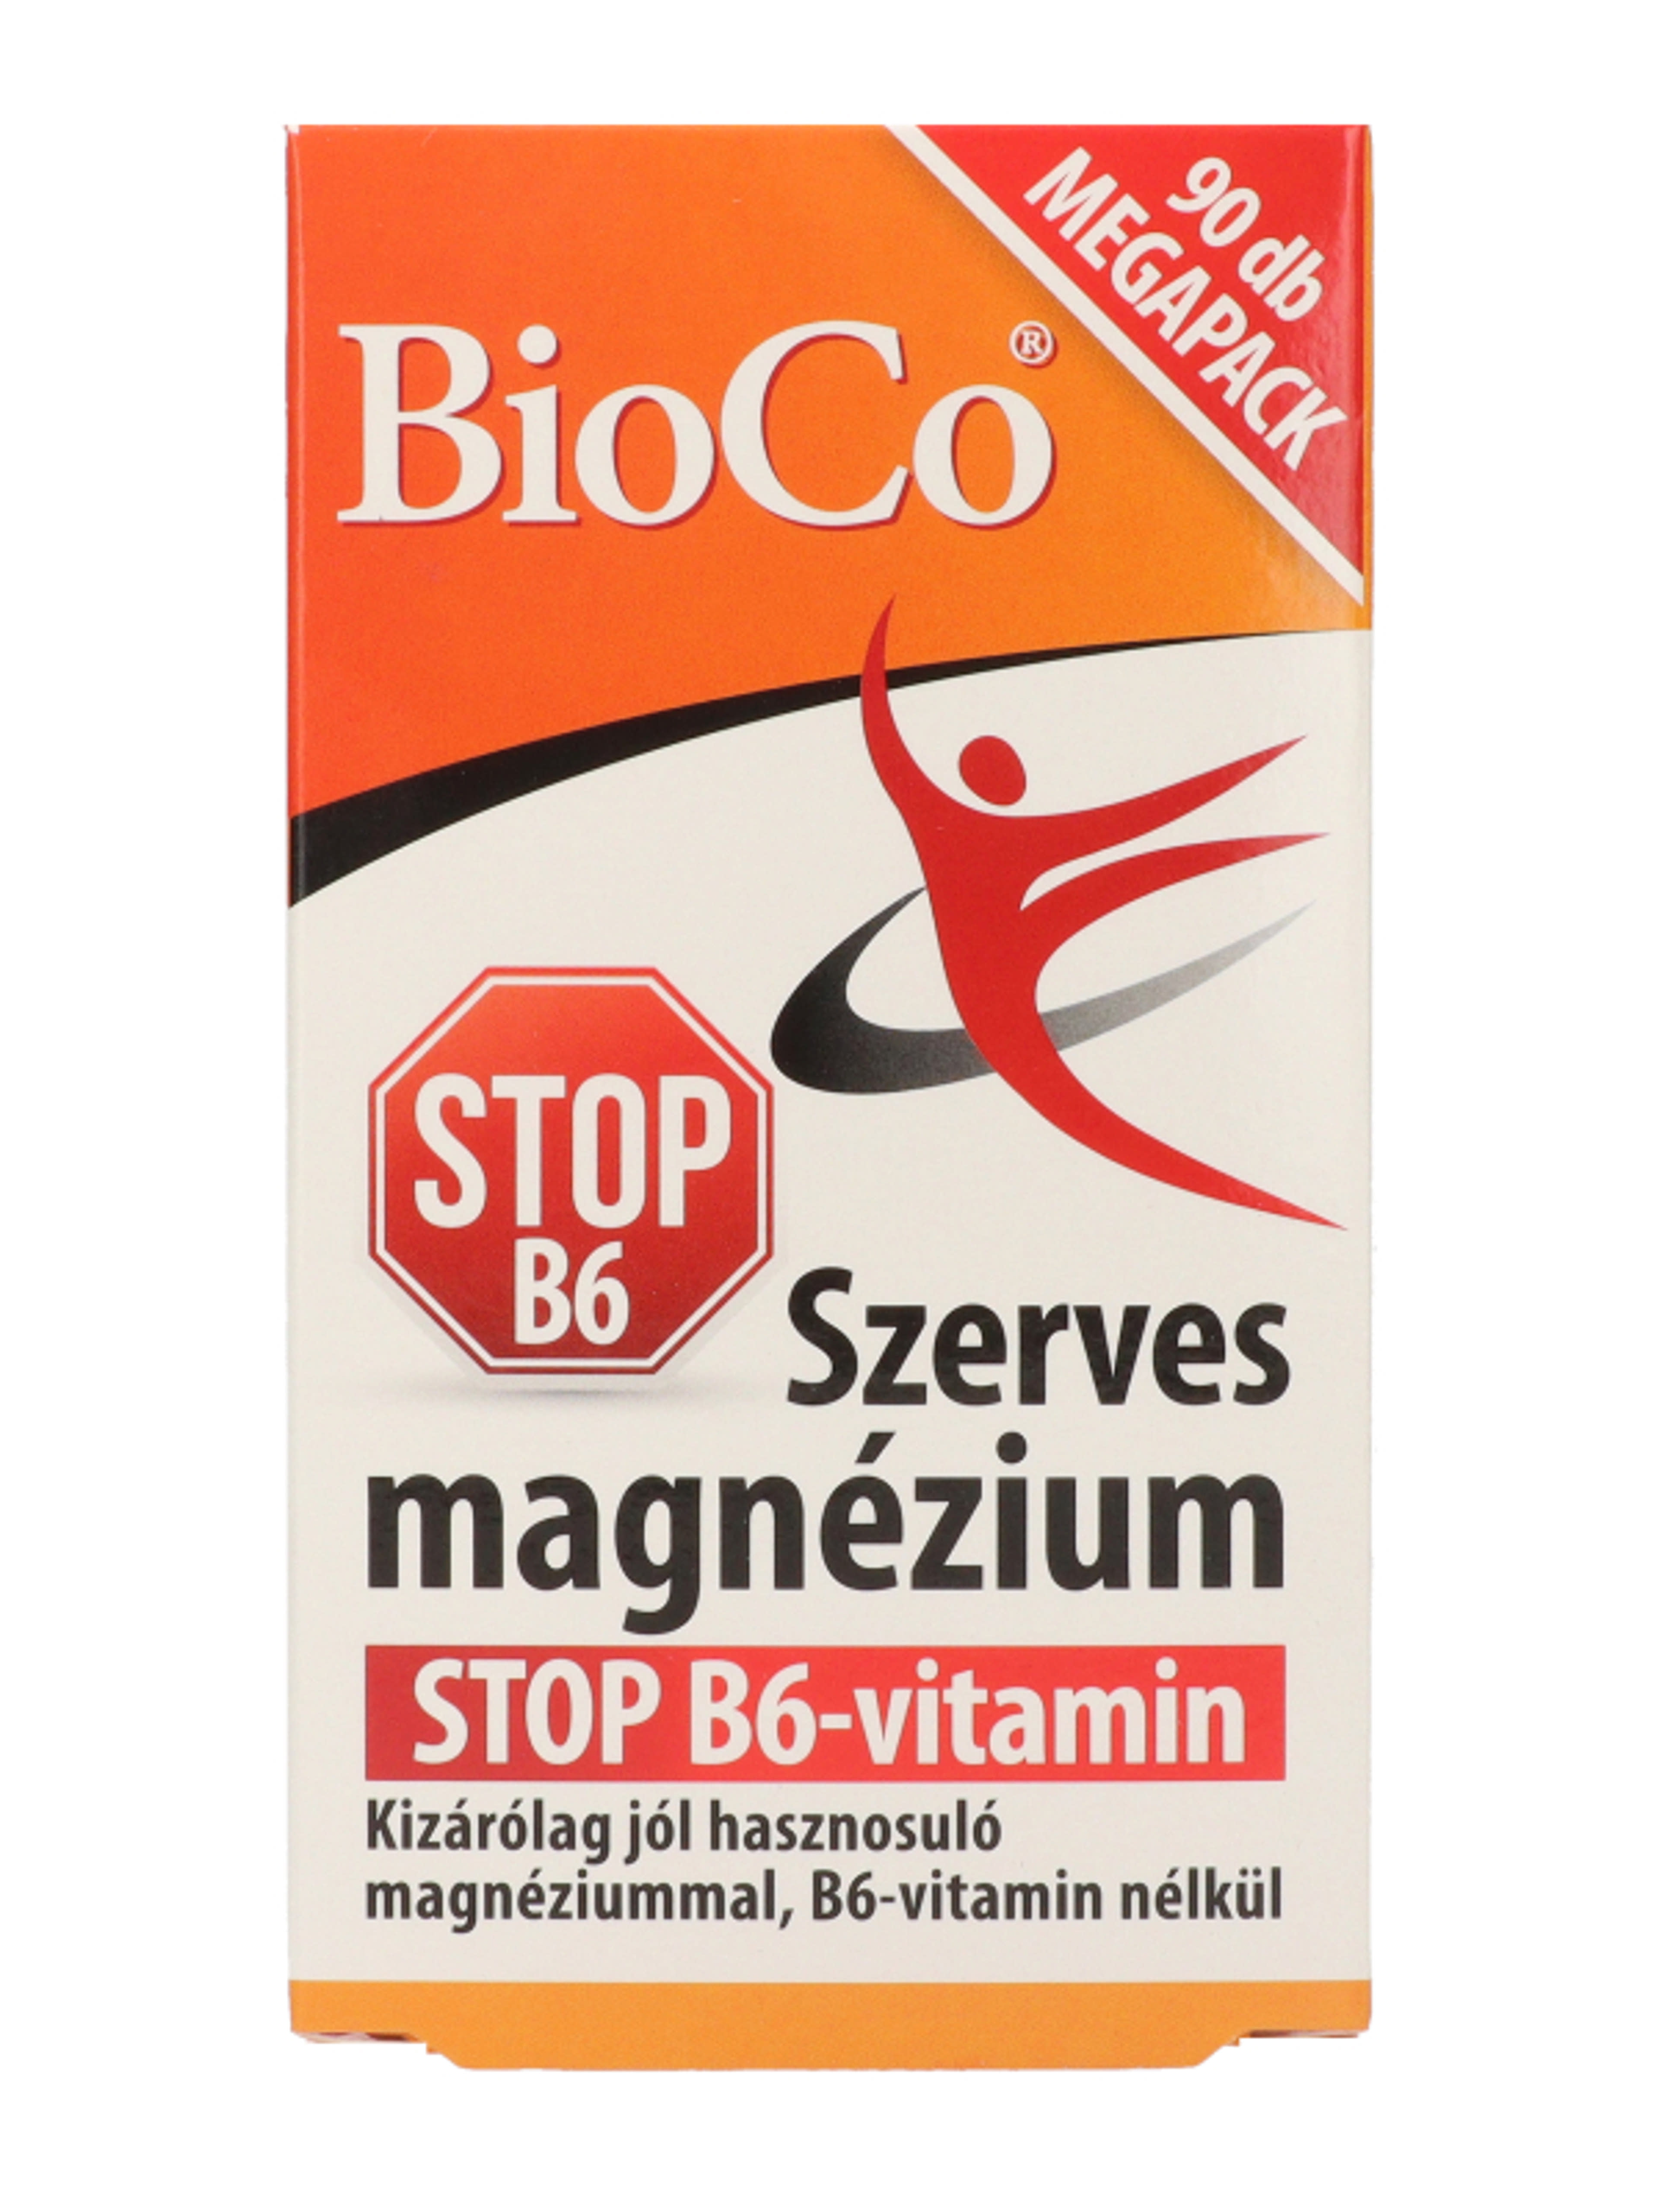 Bioco szerves magnézium stop B6 vitamin tabletta - 90 db-4